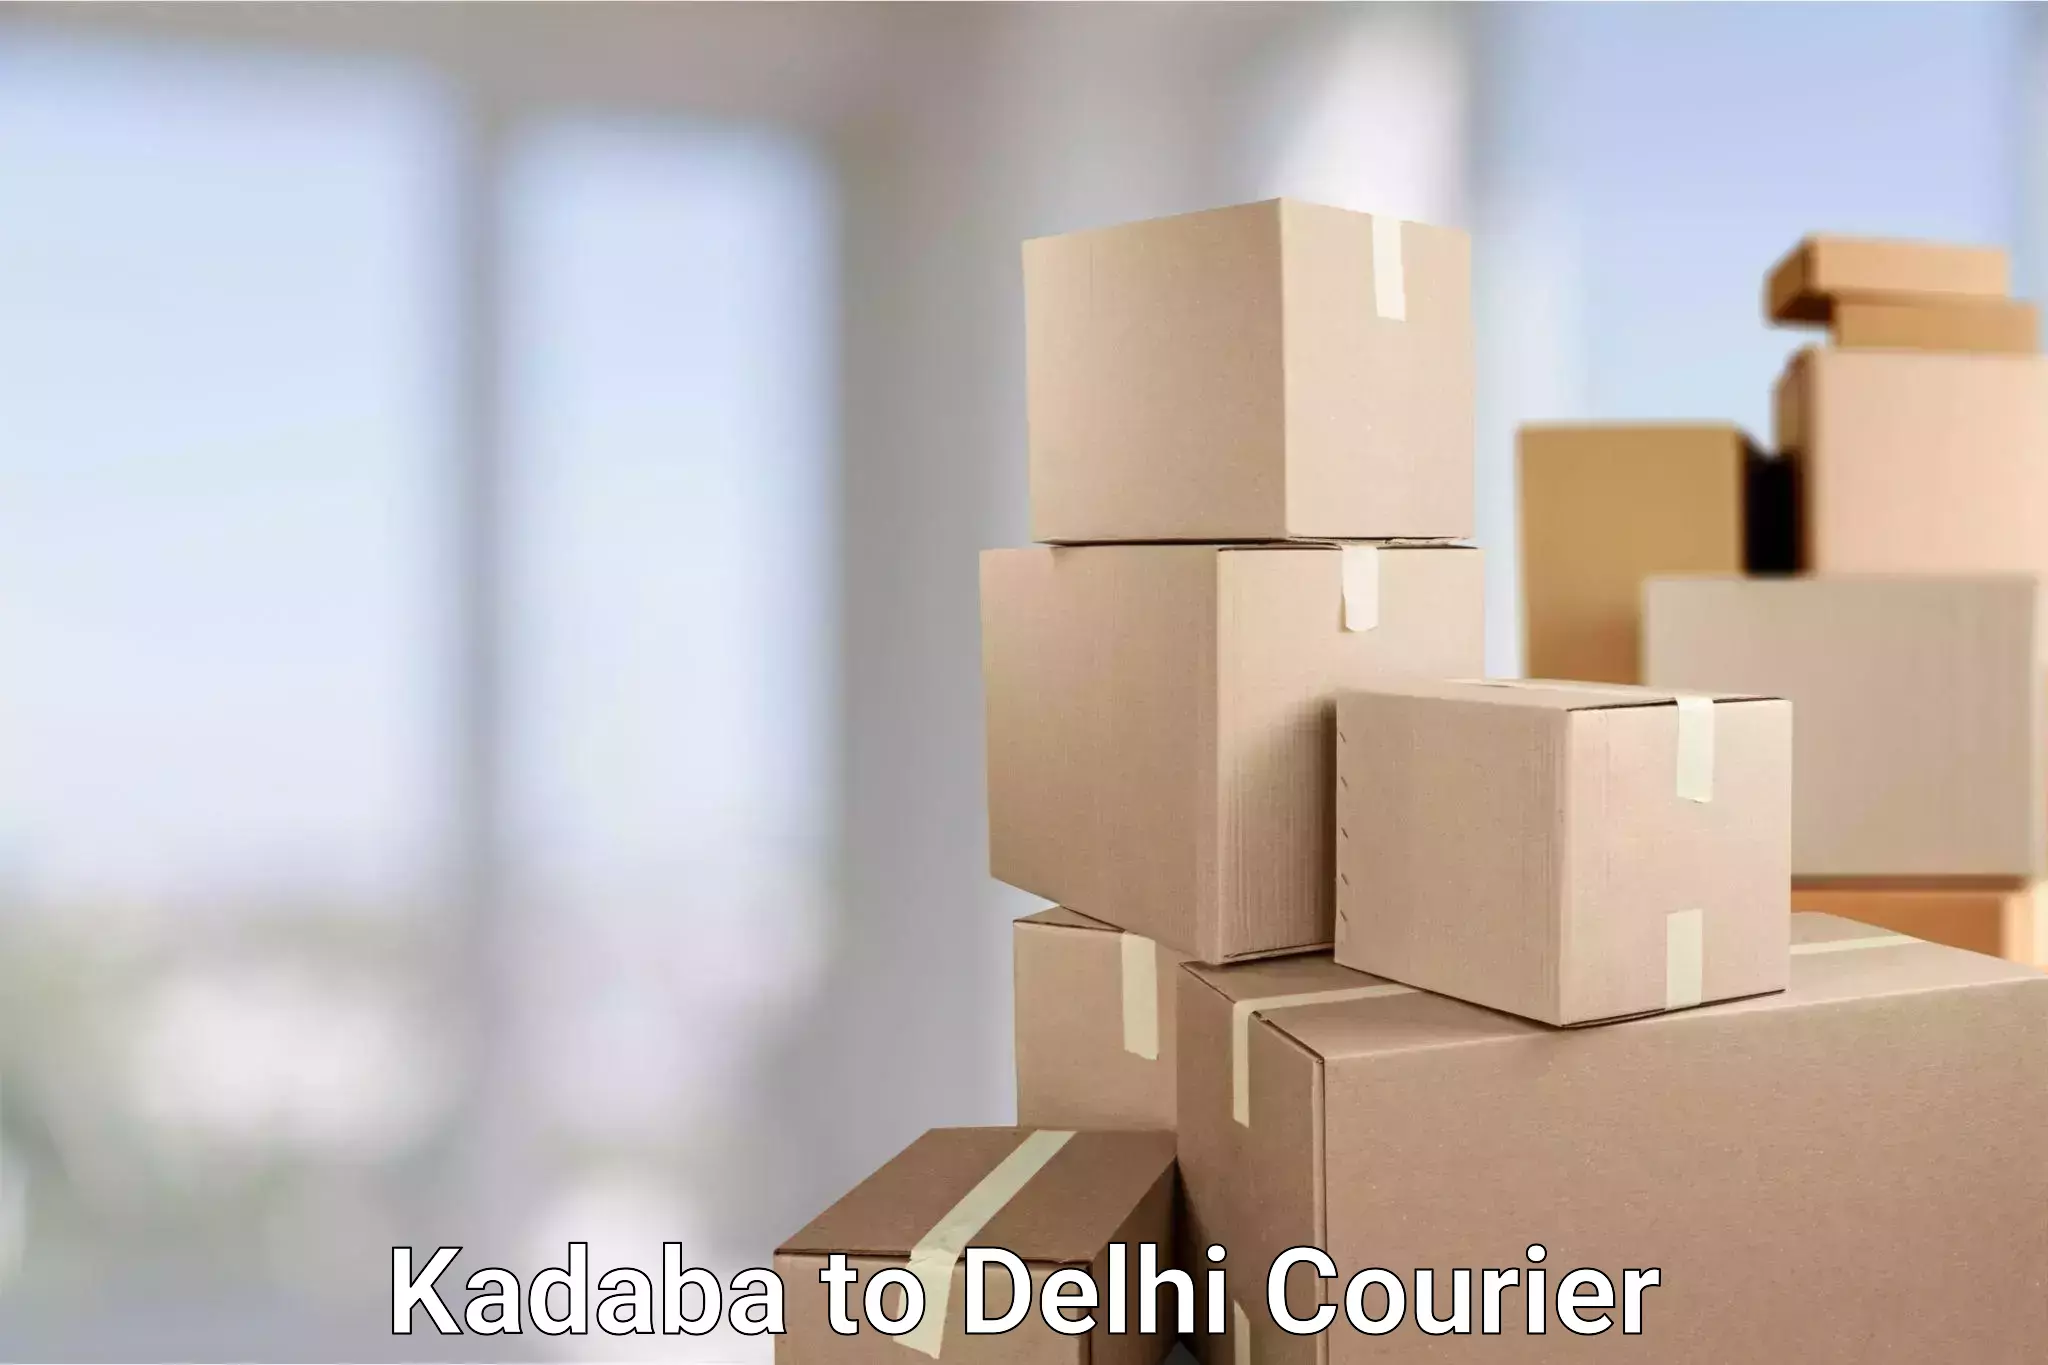 Same-day delivery solutions Kadaba to Sarojini Nagar